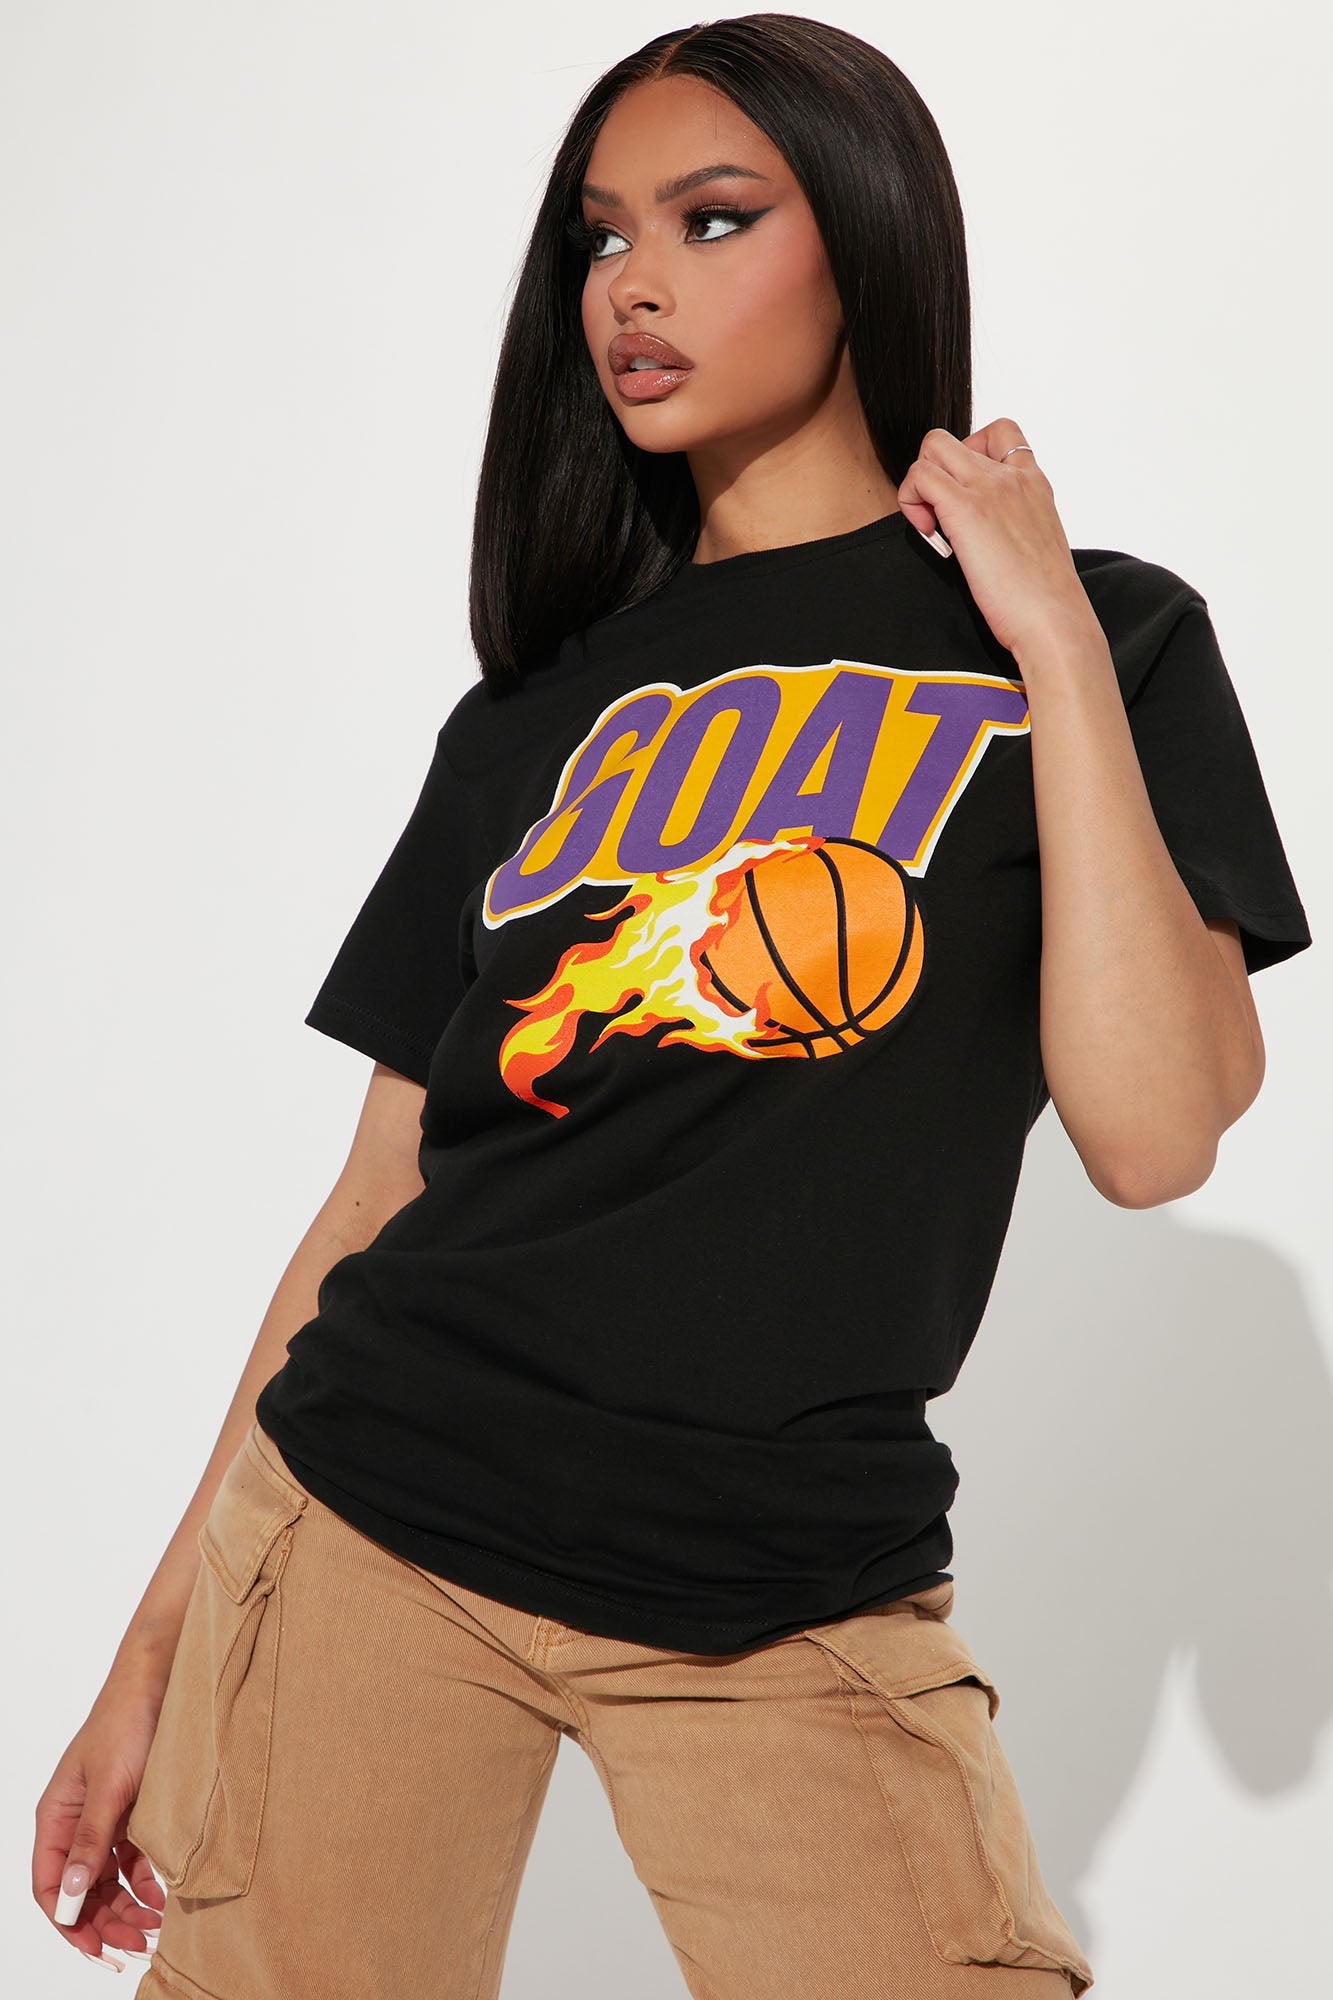  Short Sleeve,T-Shirt,Abstract Art Basketball,Cotton T